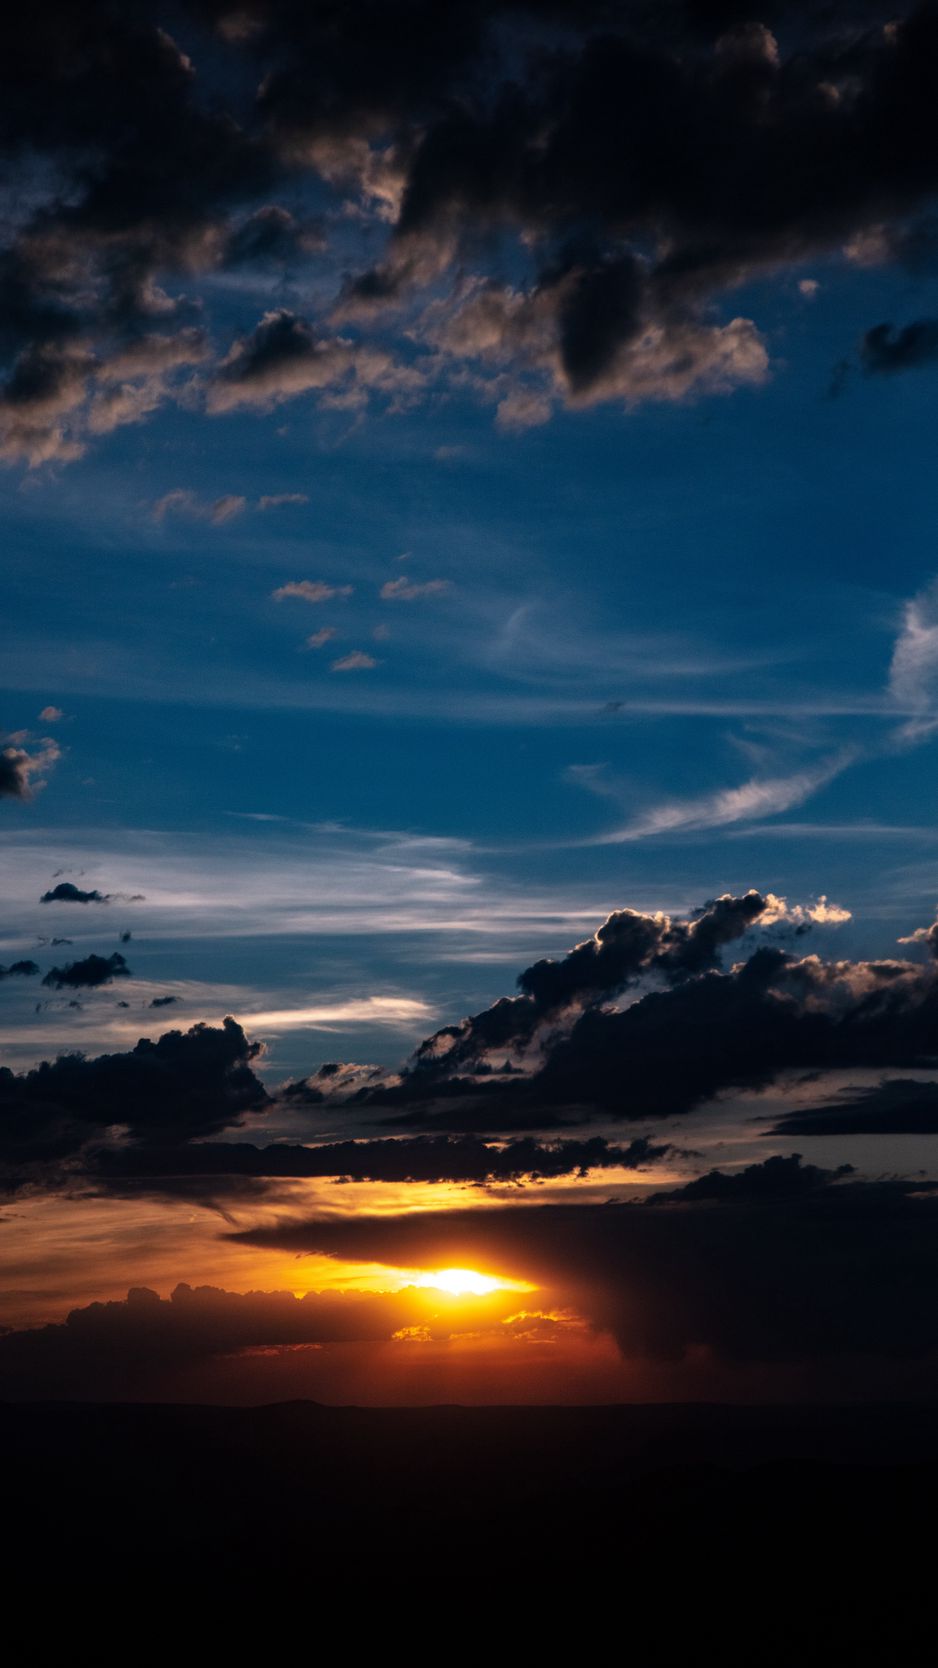 Hình nền sunset clouds là cách hoàn hảo để hòa mình vào những khoảnh khắc yên tĩnh và thư giãn trên dải đất này. Những đám mây vàng tuyệt đẹp nằm trên nền bầu trời đang chuyển màu sẽ mang đến cho bạn cảm giác tuyệt vời và sự thư thái không ngờ.